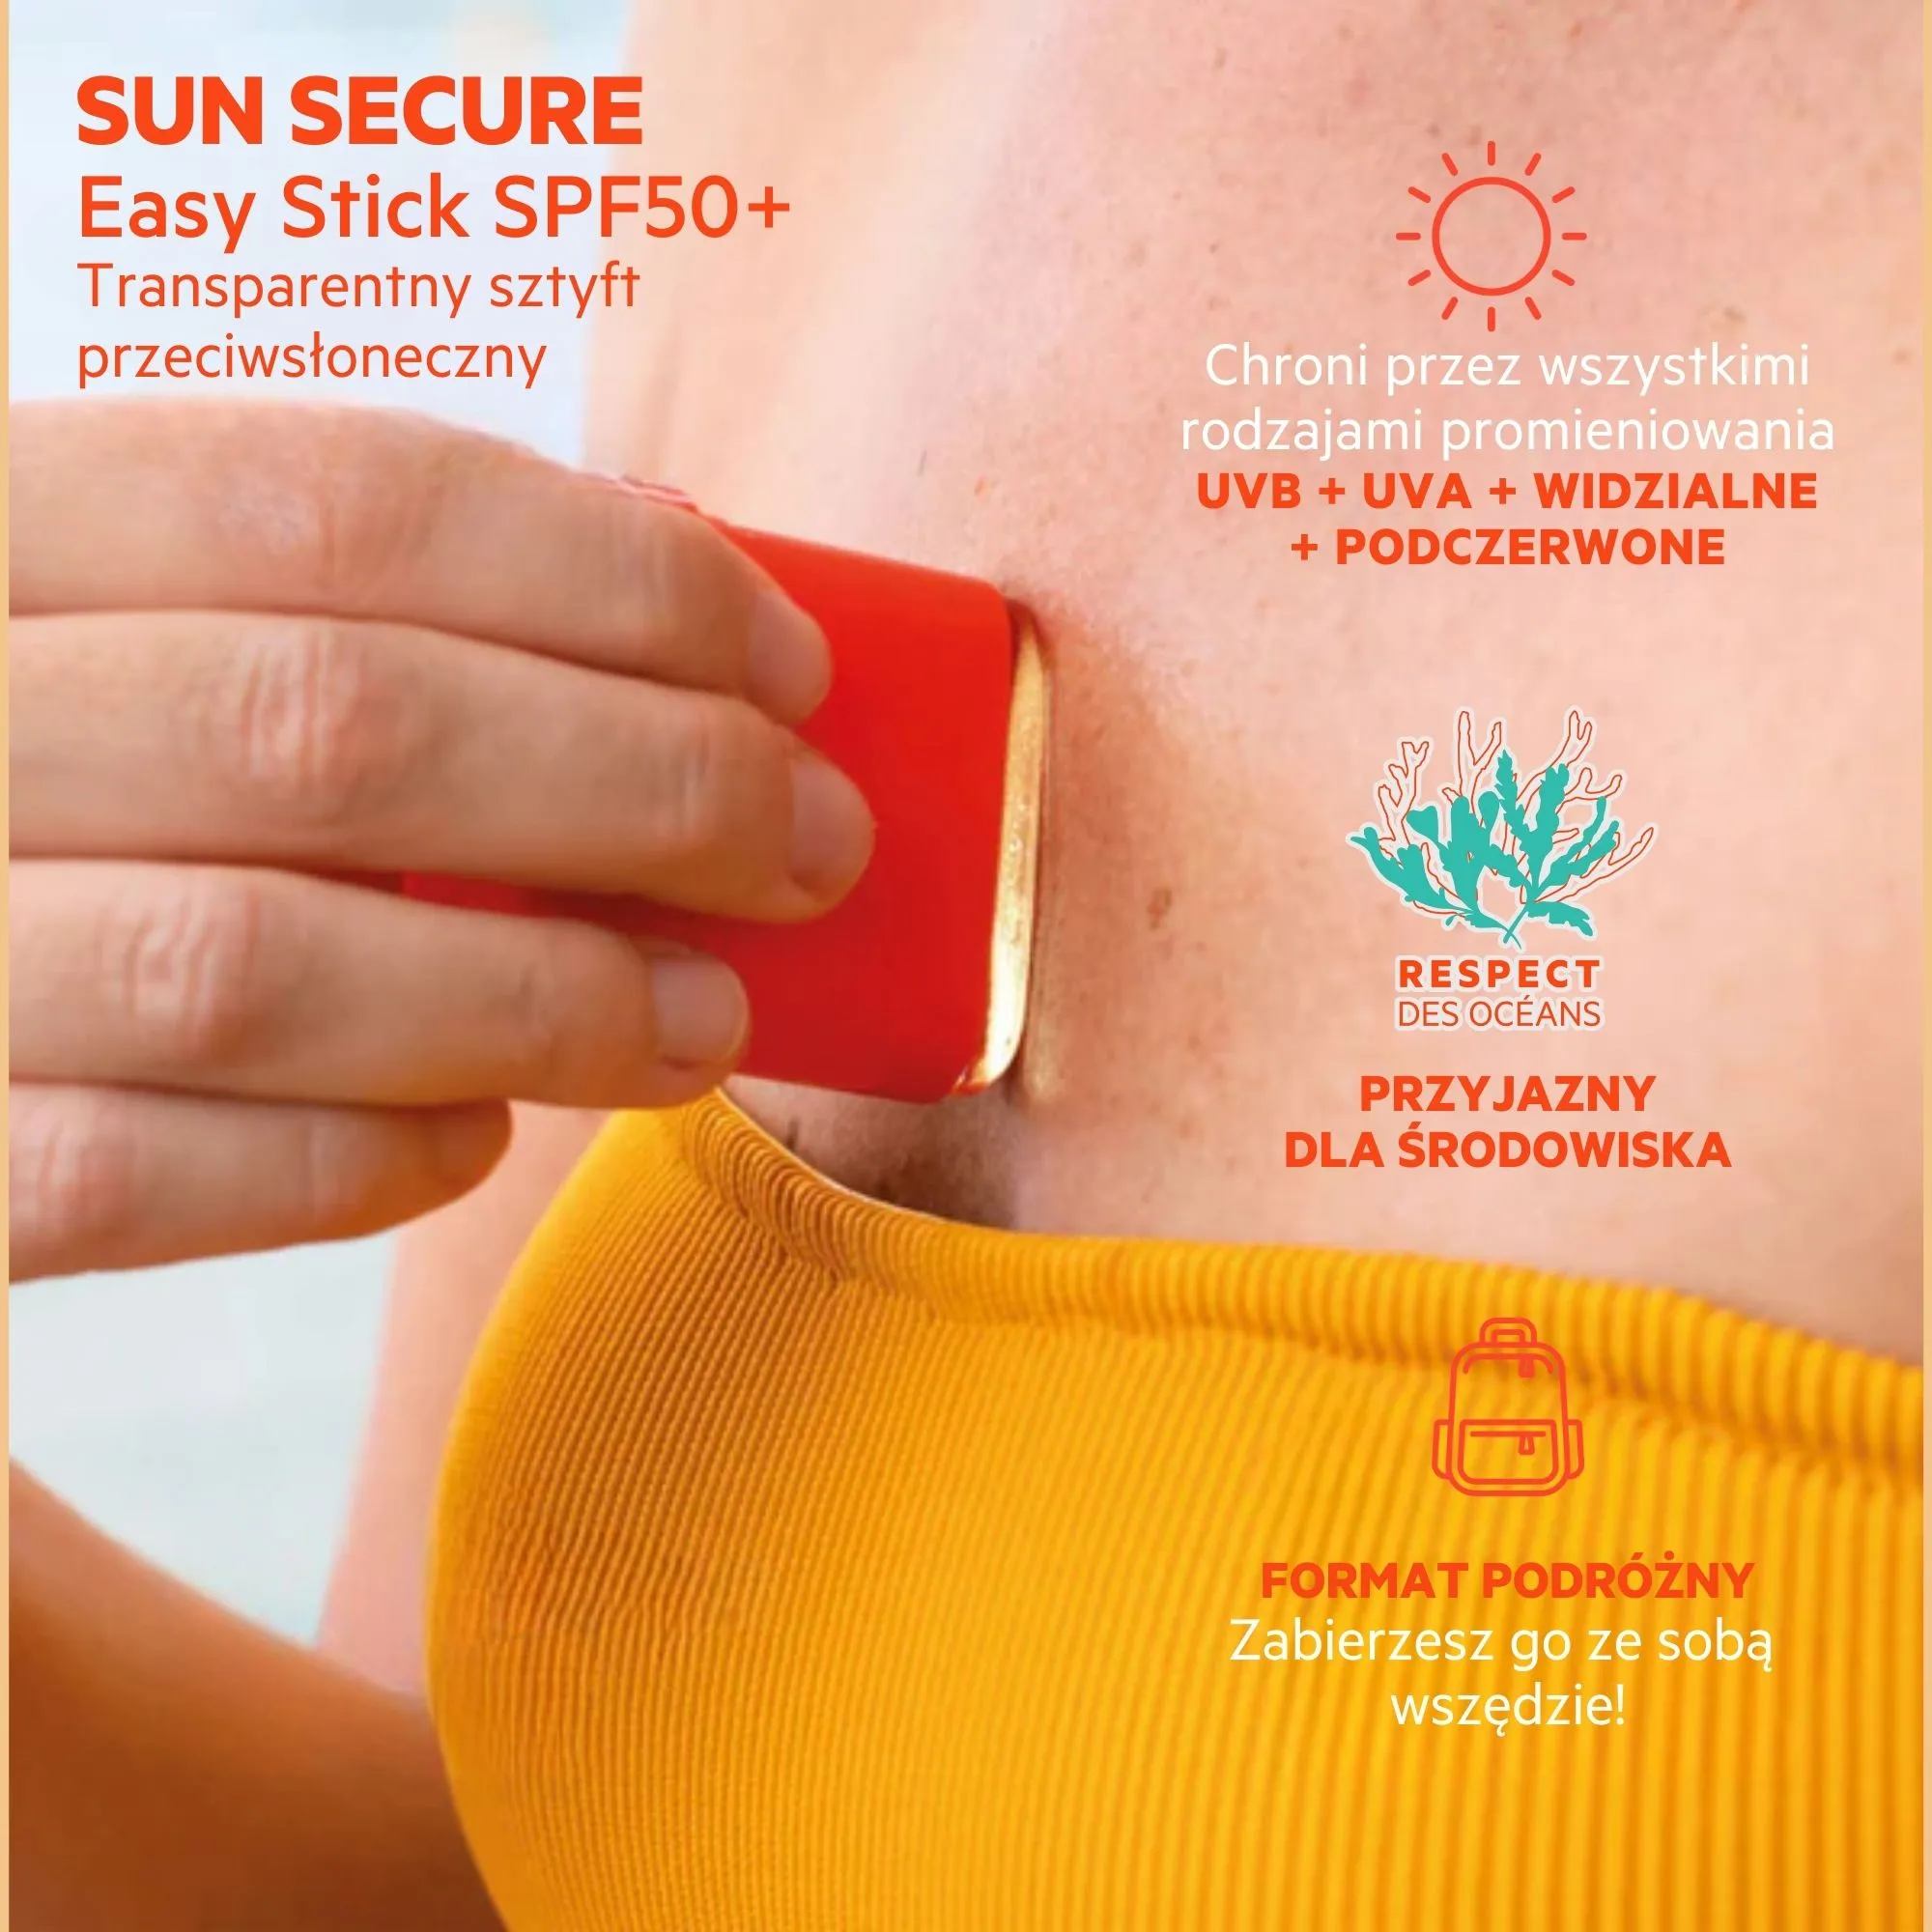 SVR Sun Secure Easy Stick SPF 50+, transparentny sztyft przeciwsłoneczny SPF 50+, 10 g 